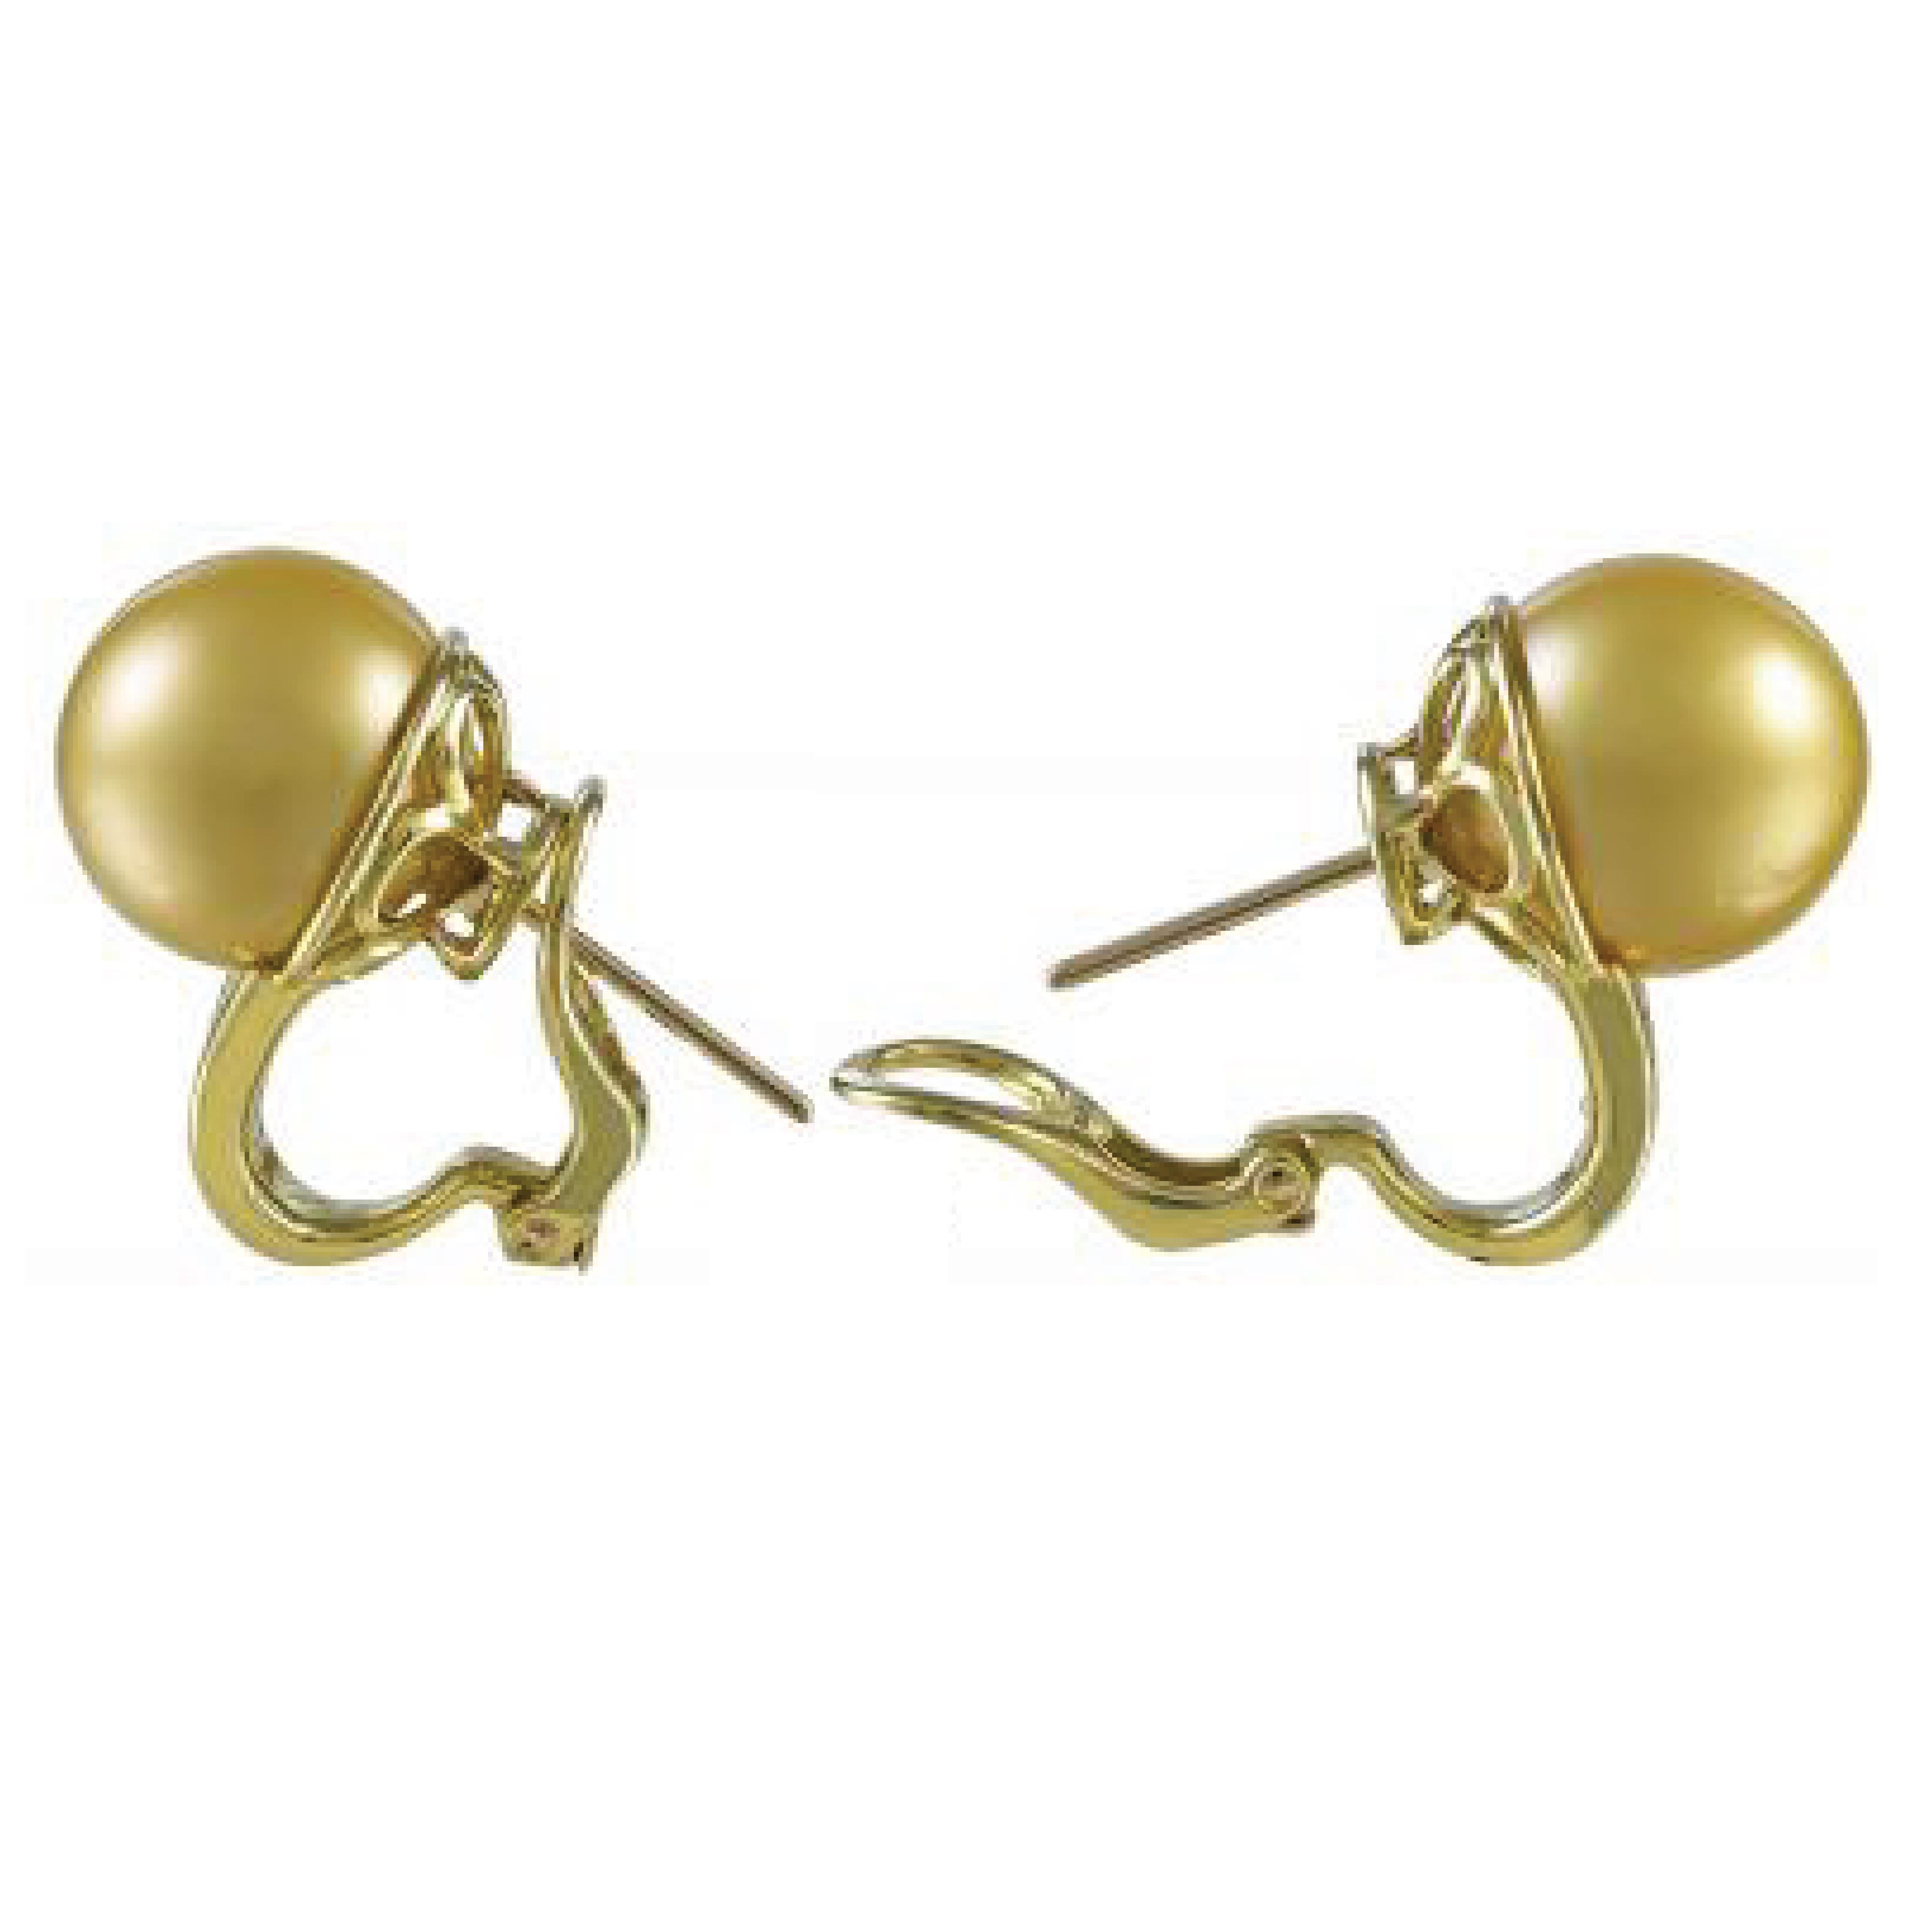 Boucles d'oreilles en or jaune 18 carats Sophia D avec perles et diamants baguettes pesant 1,32 carats.

Sophia D by Joseph Dardashti Ltd est connue dans le monde entier depuis 35 ans et s'inspire du design classique de l'Art déco qui fusionne avec